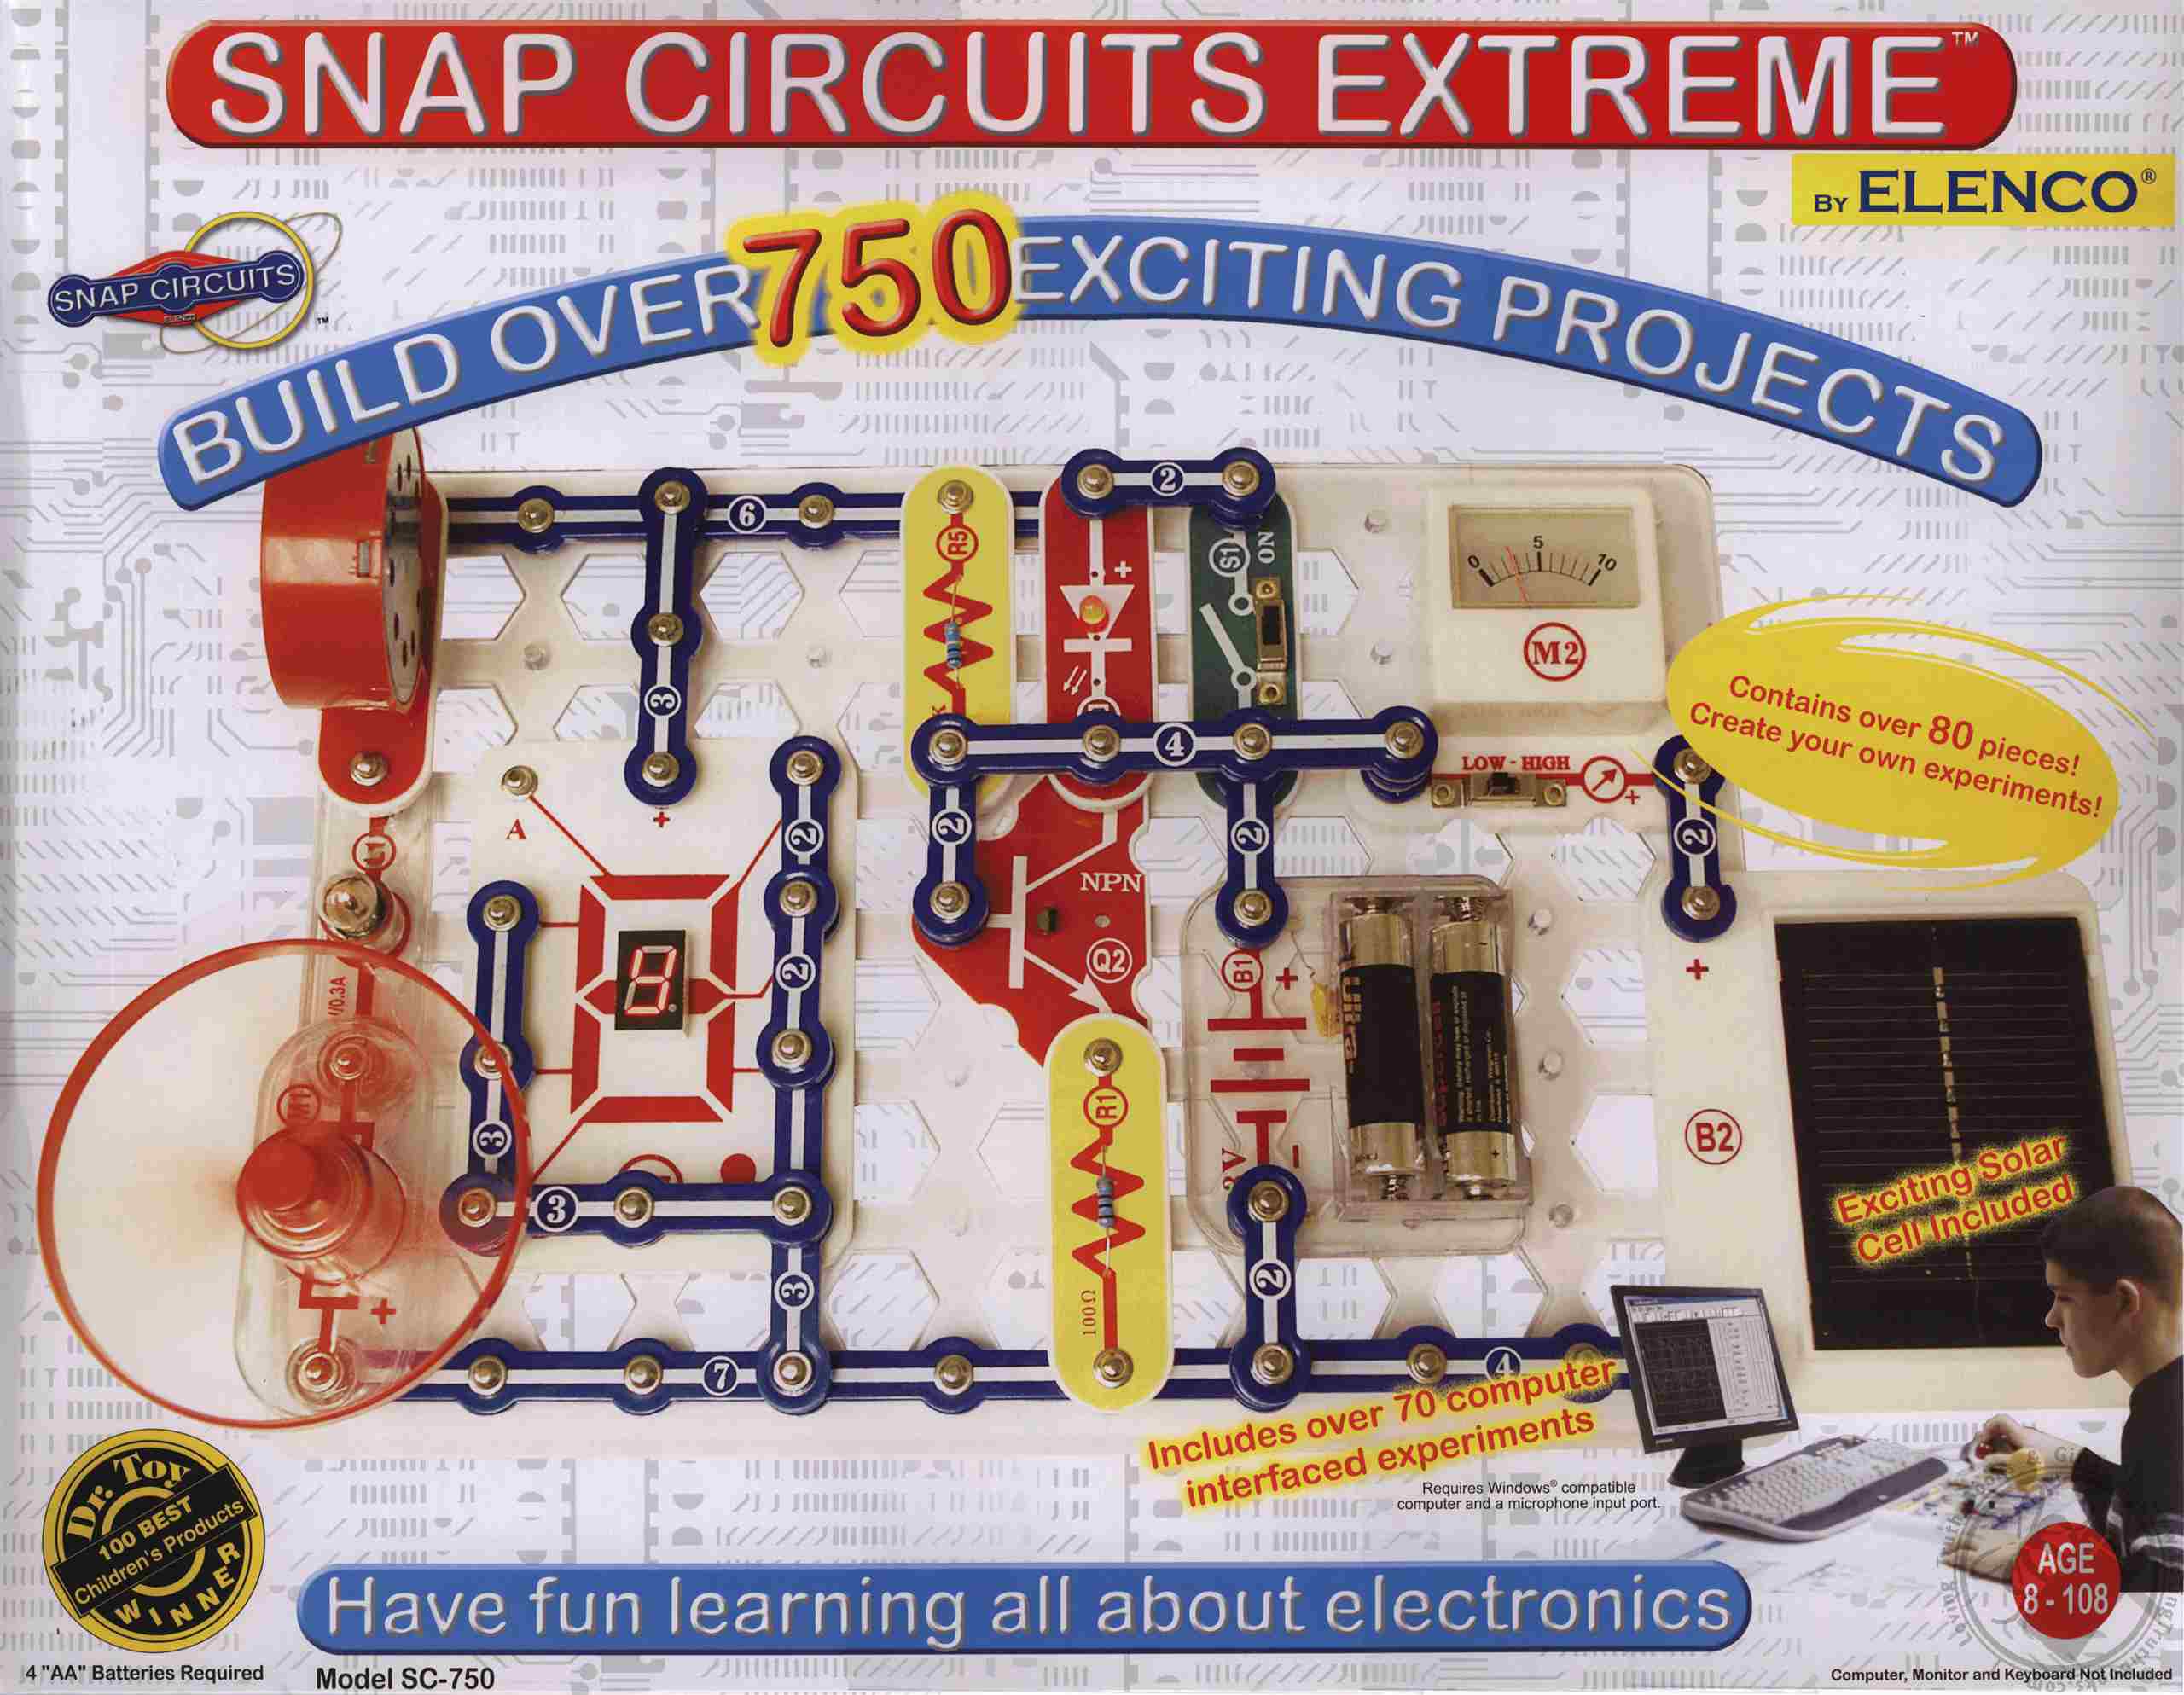 snap circuits computer interface